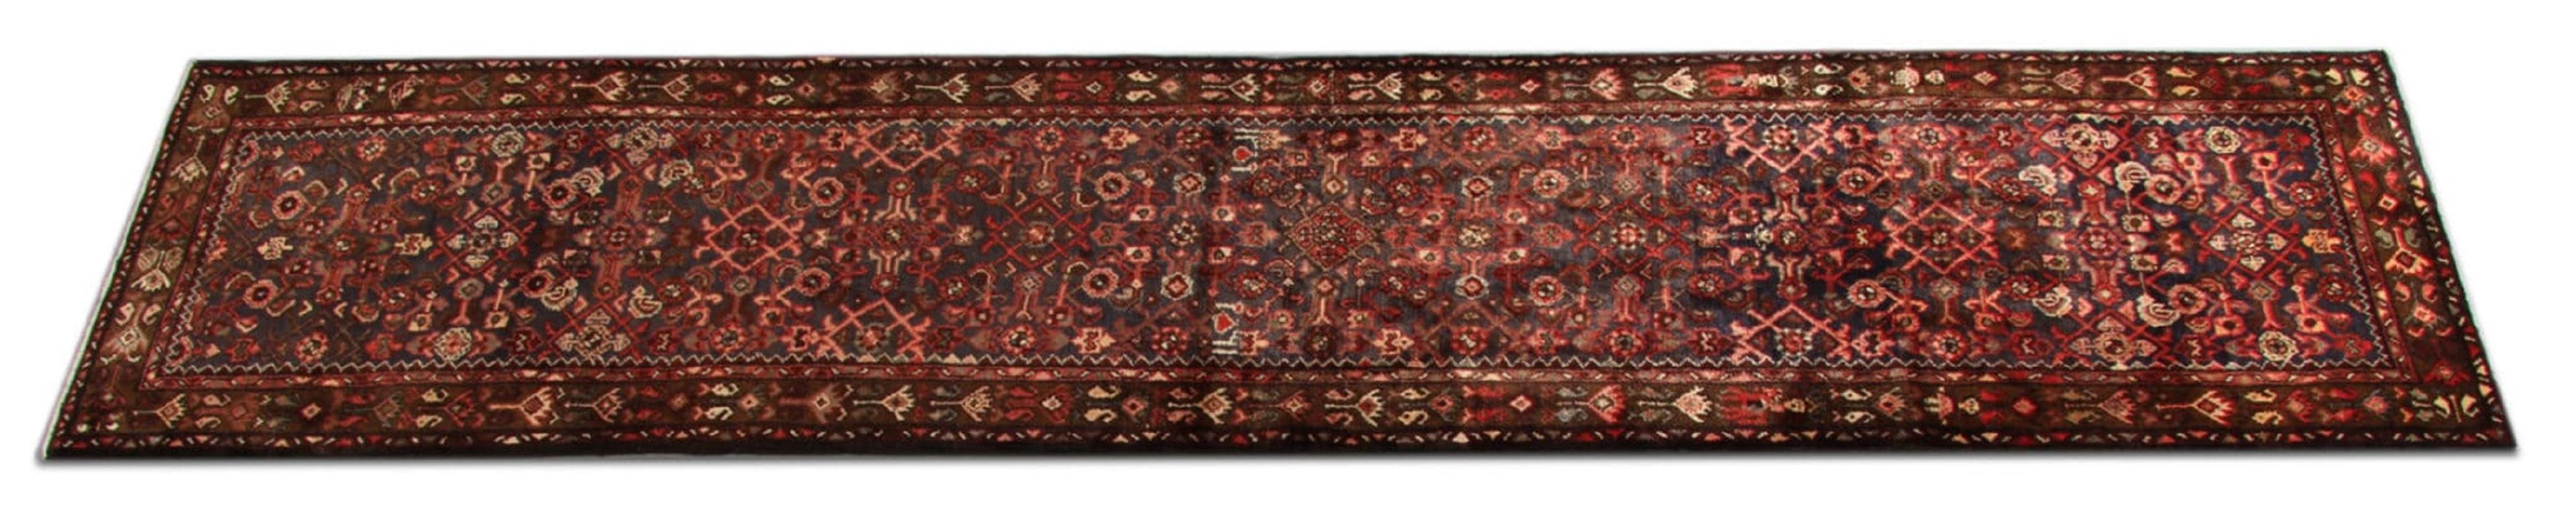 Persian Vintage Carpet Runner, Blue Geometric Traditional Runner Rug For Sale